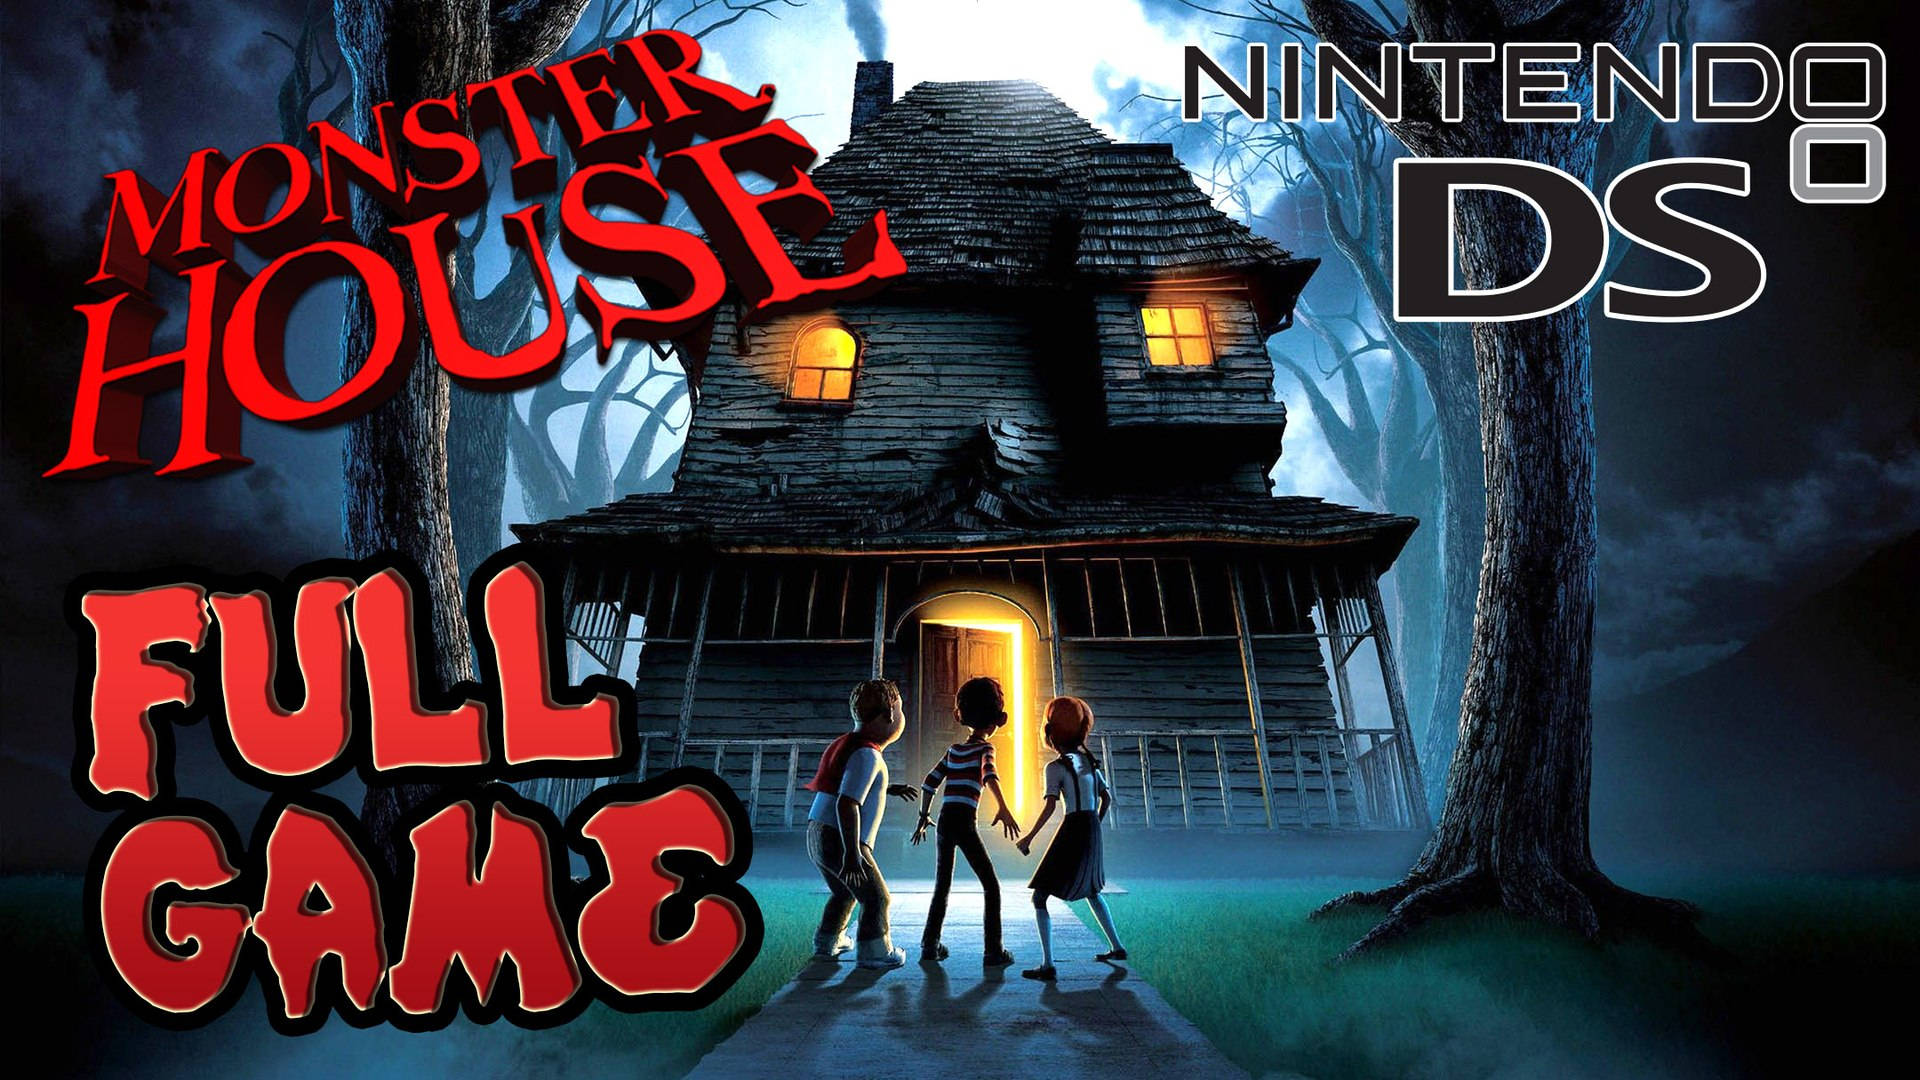 Monster House Nintendo DS Poster Wallpaper. 